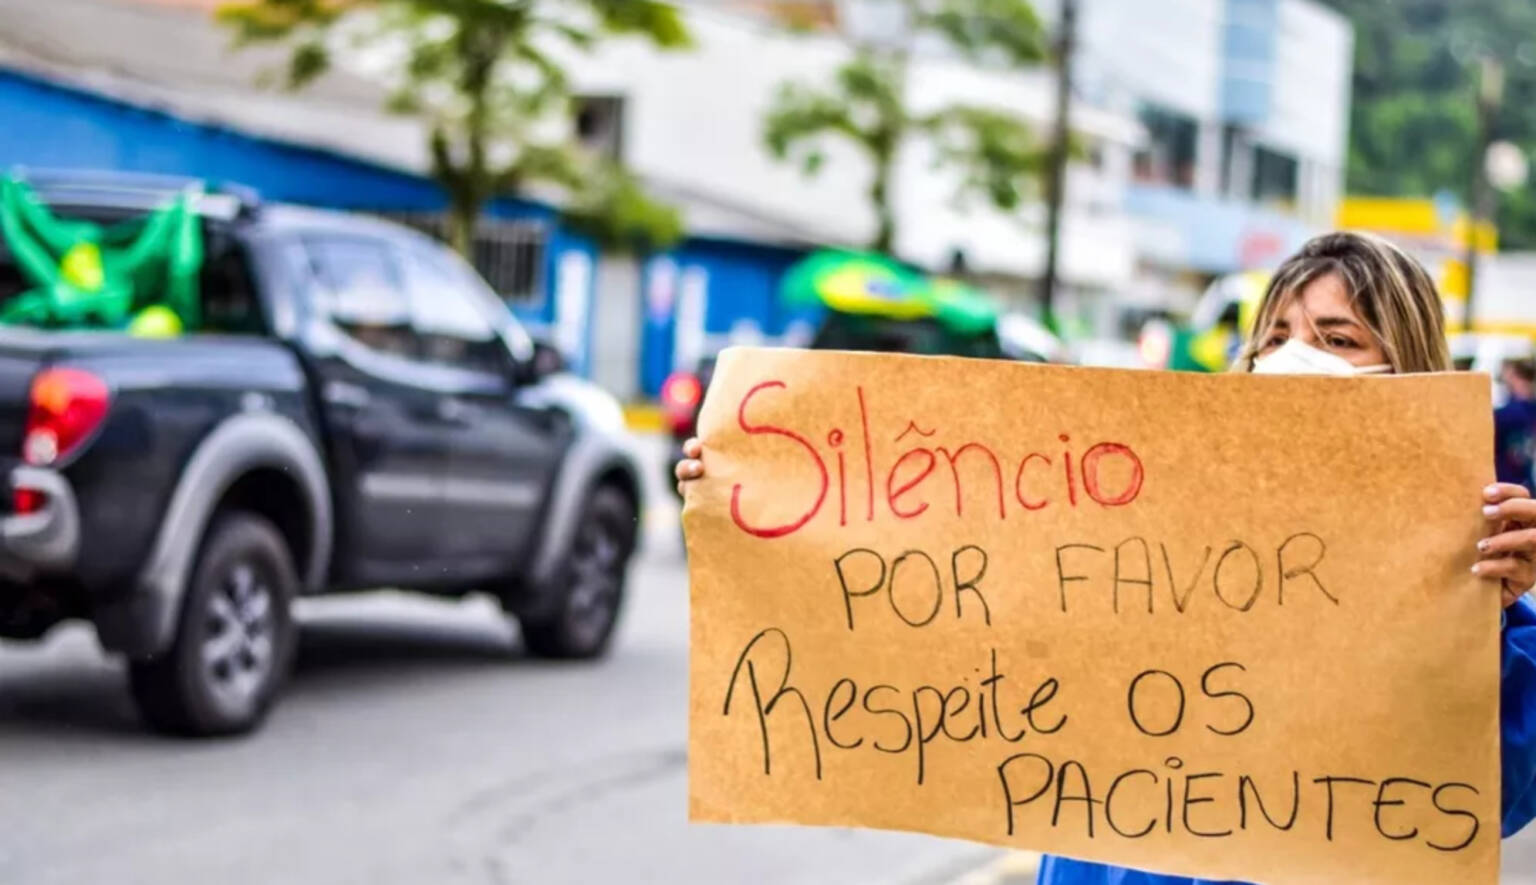 Médicos reagem a buzinaço bolsonarista em frente a hospital público no Paraná: “Respeite os pacientes”